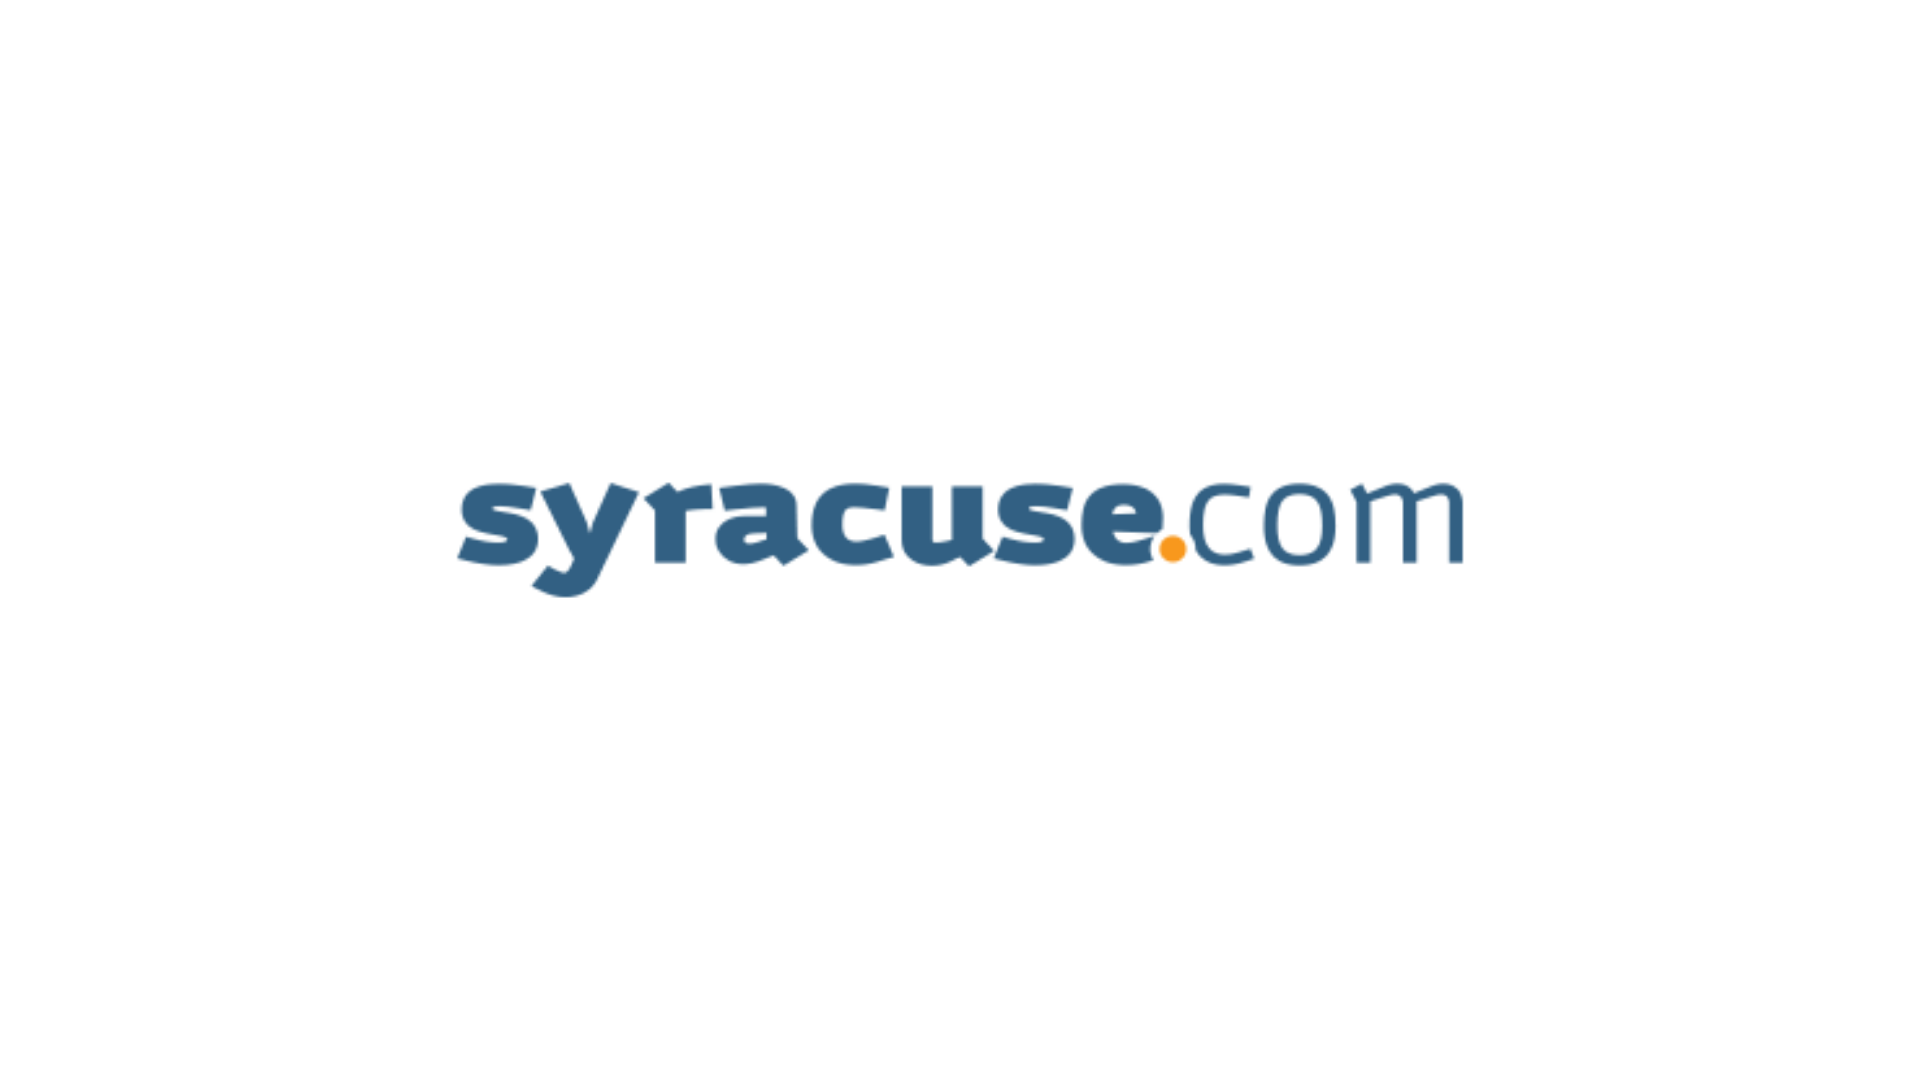 syracuse.com Press